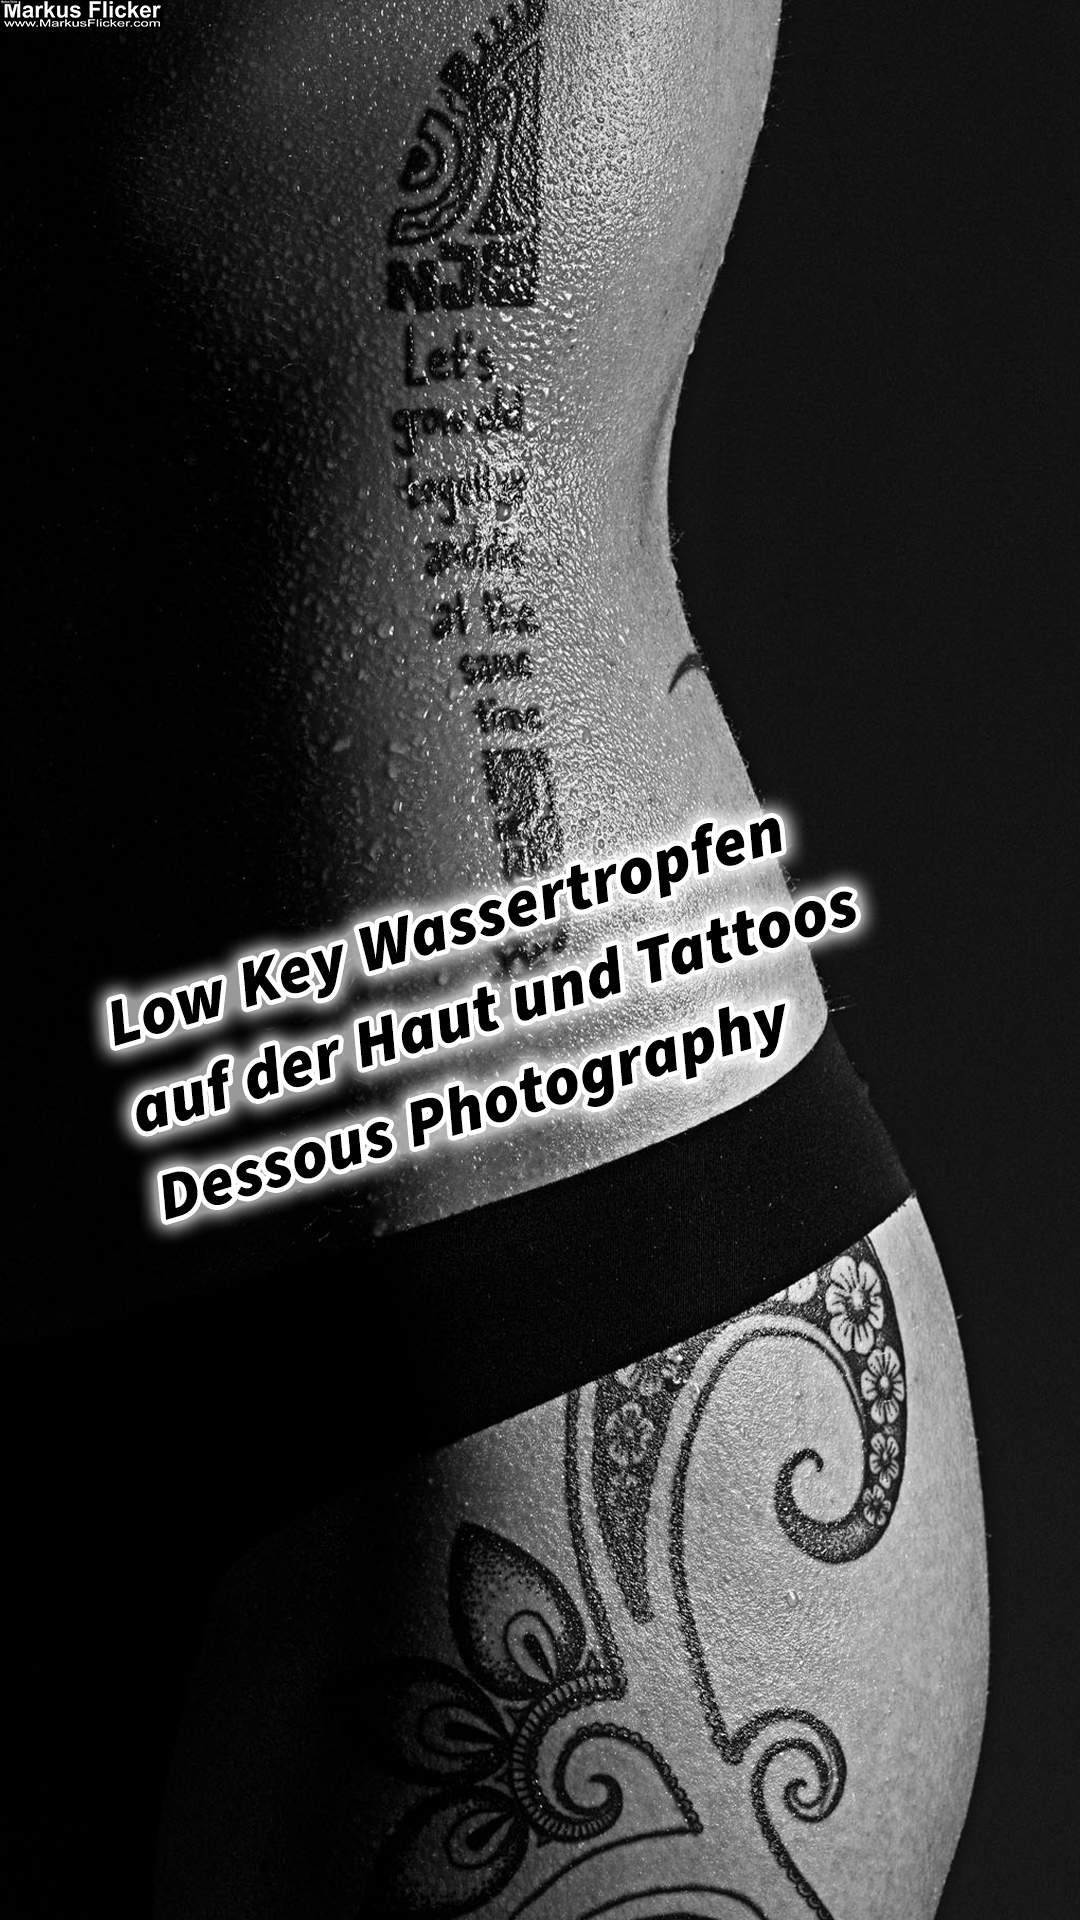 Low Key Wassertropfen auf der Haut und Tattoos Dessous Photography